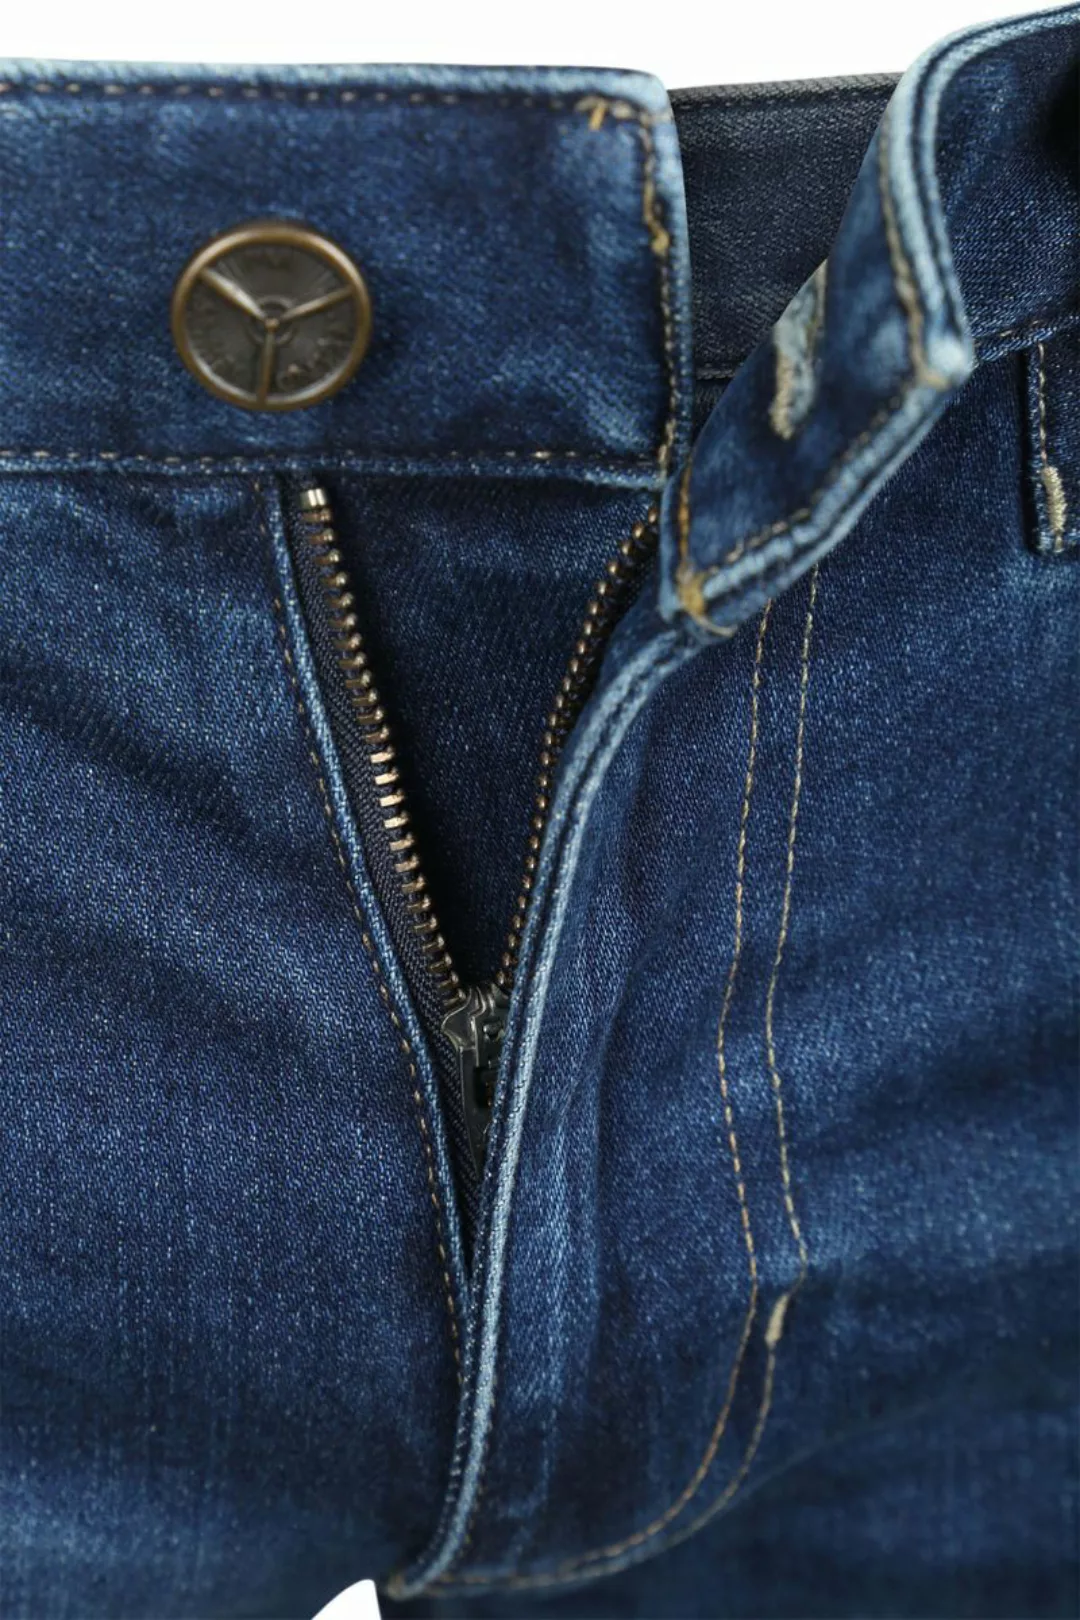 PME Legend Commander 3.0 Jeans Blau TBM - Größe W 36 - L 34 günstig online kaufen